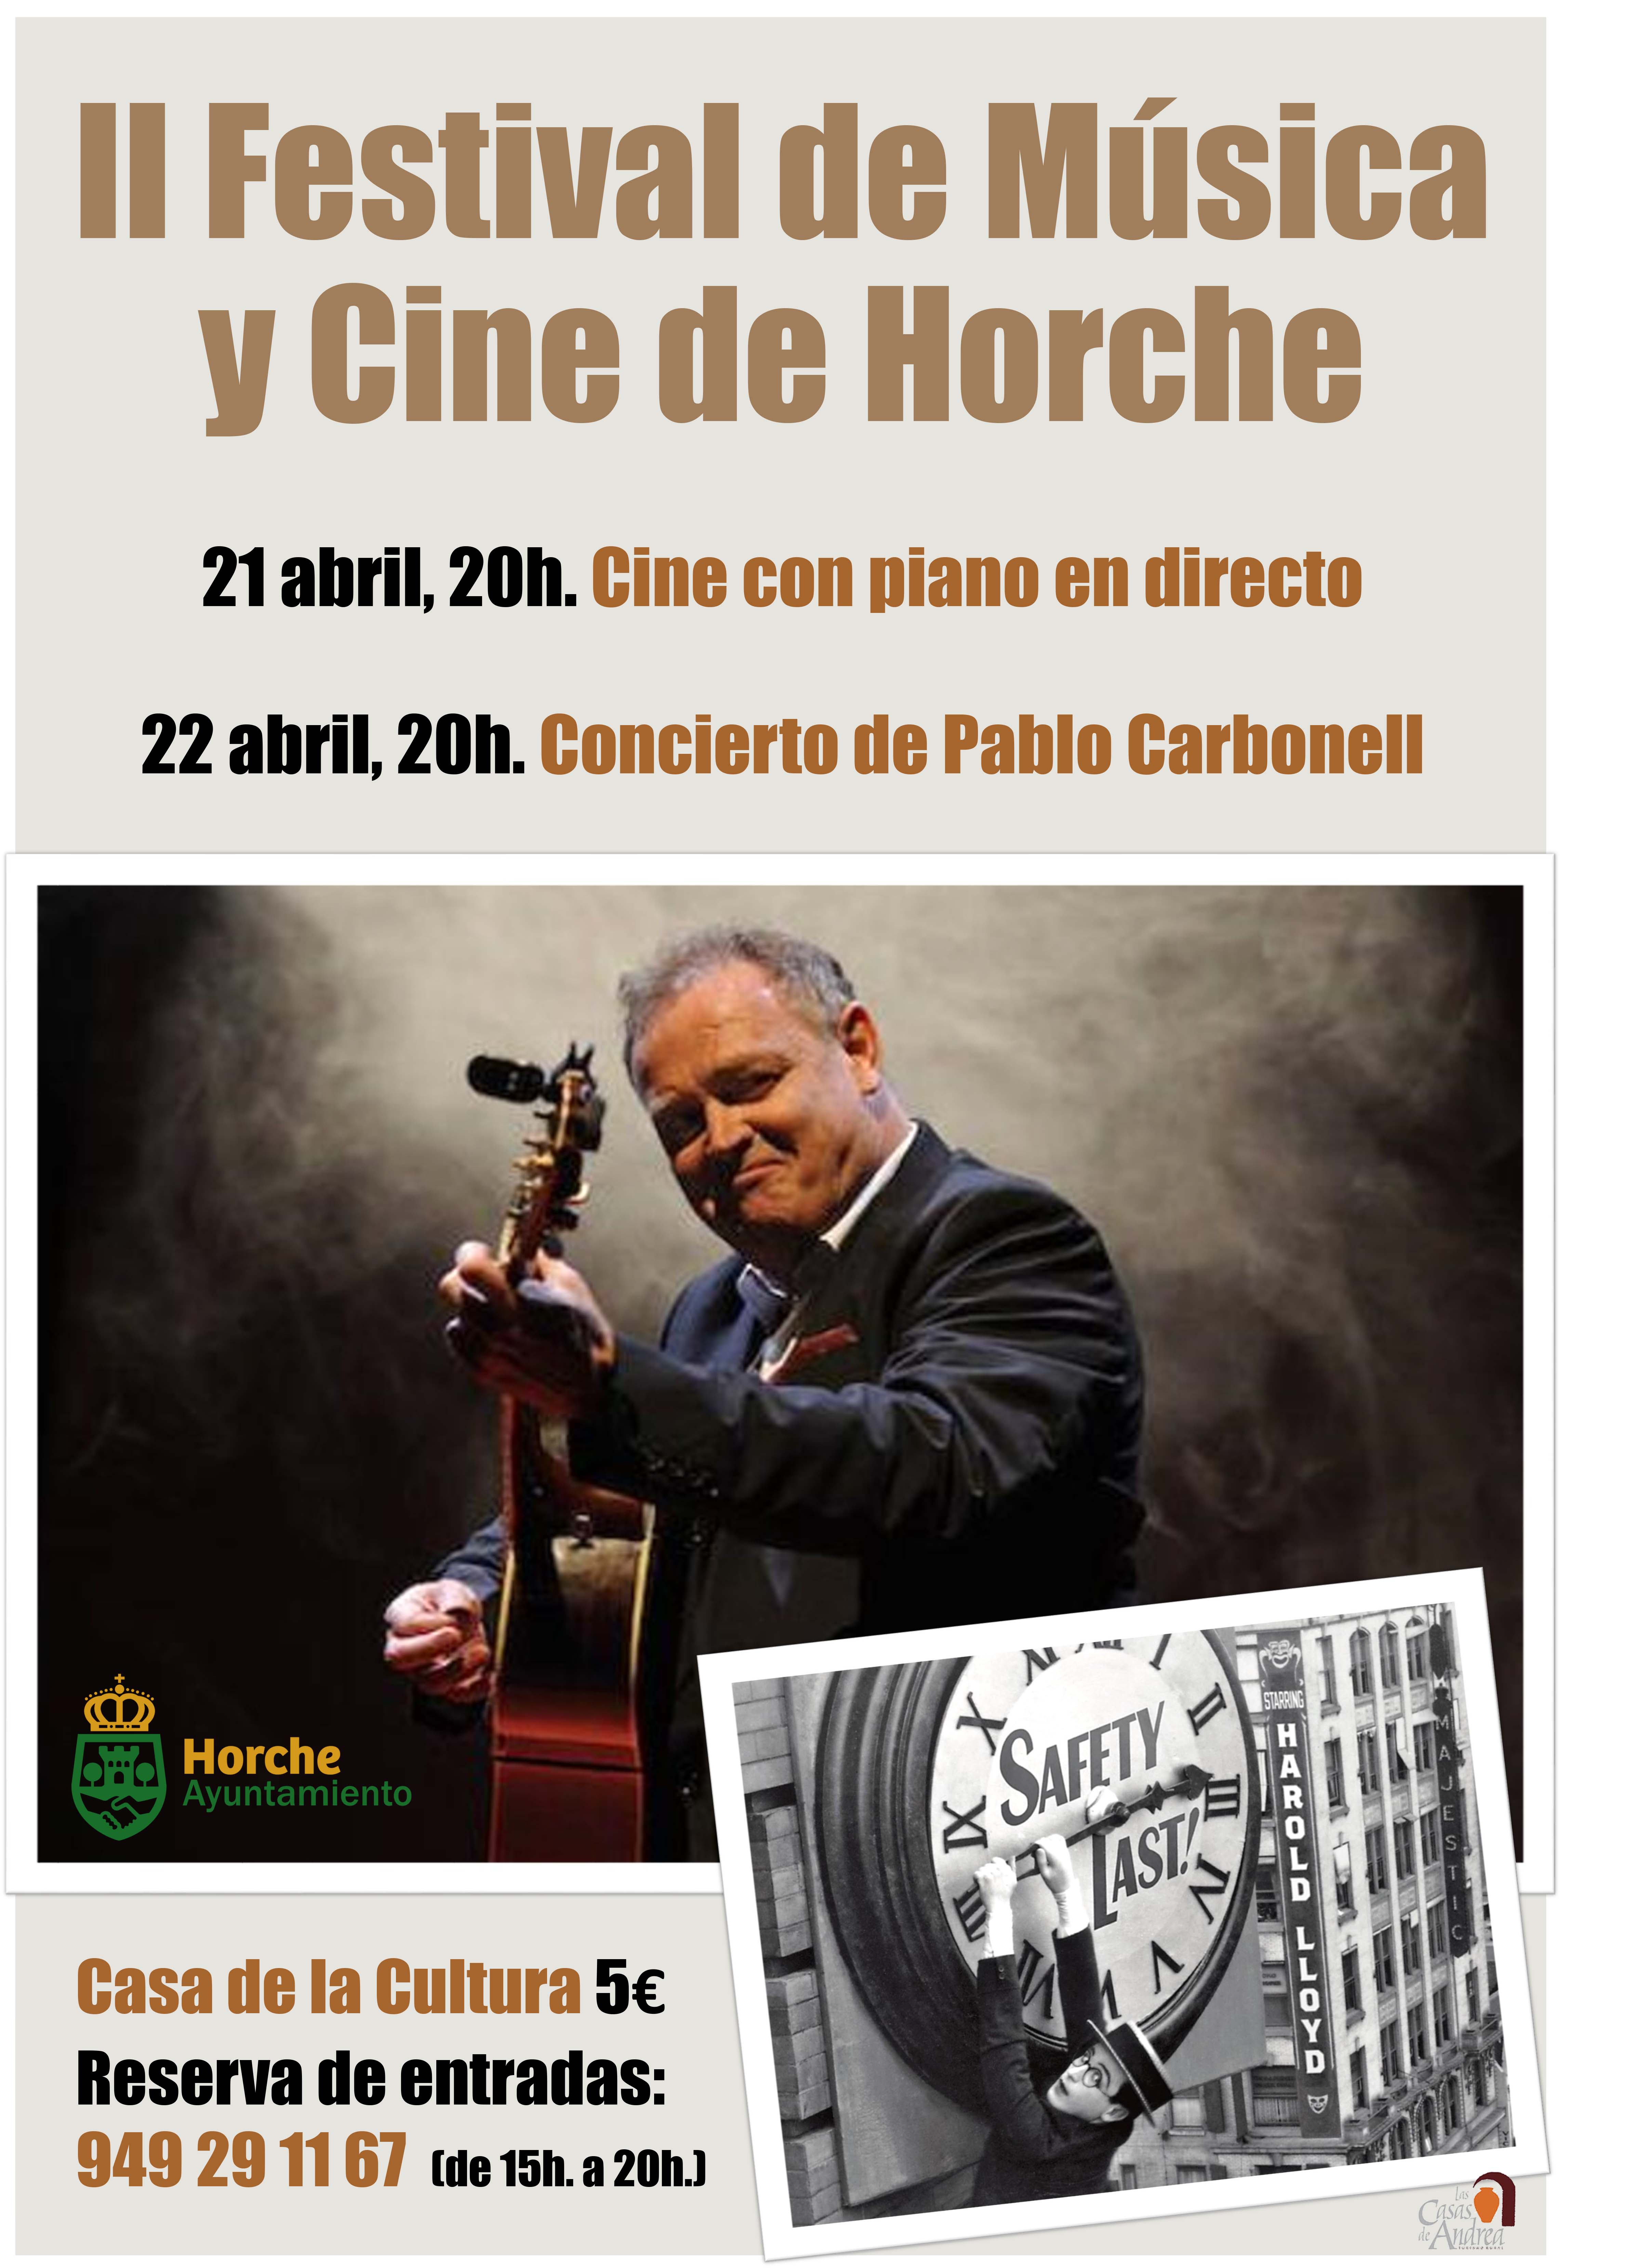 Pablo Carbonell y el pianista Adrián Begoña actuarán en el II Festival de Música y Cine de Horche